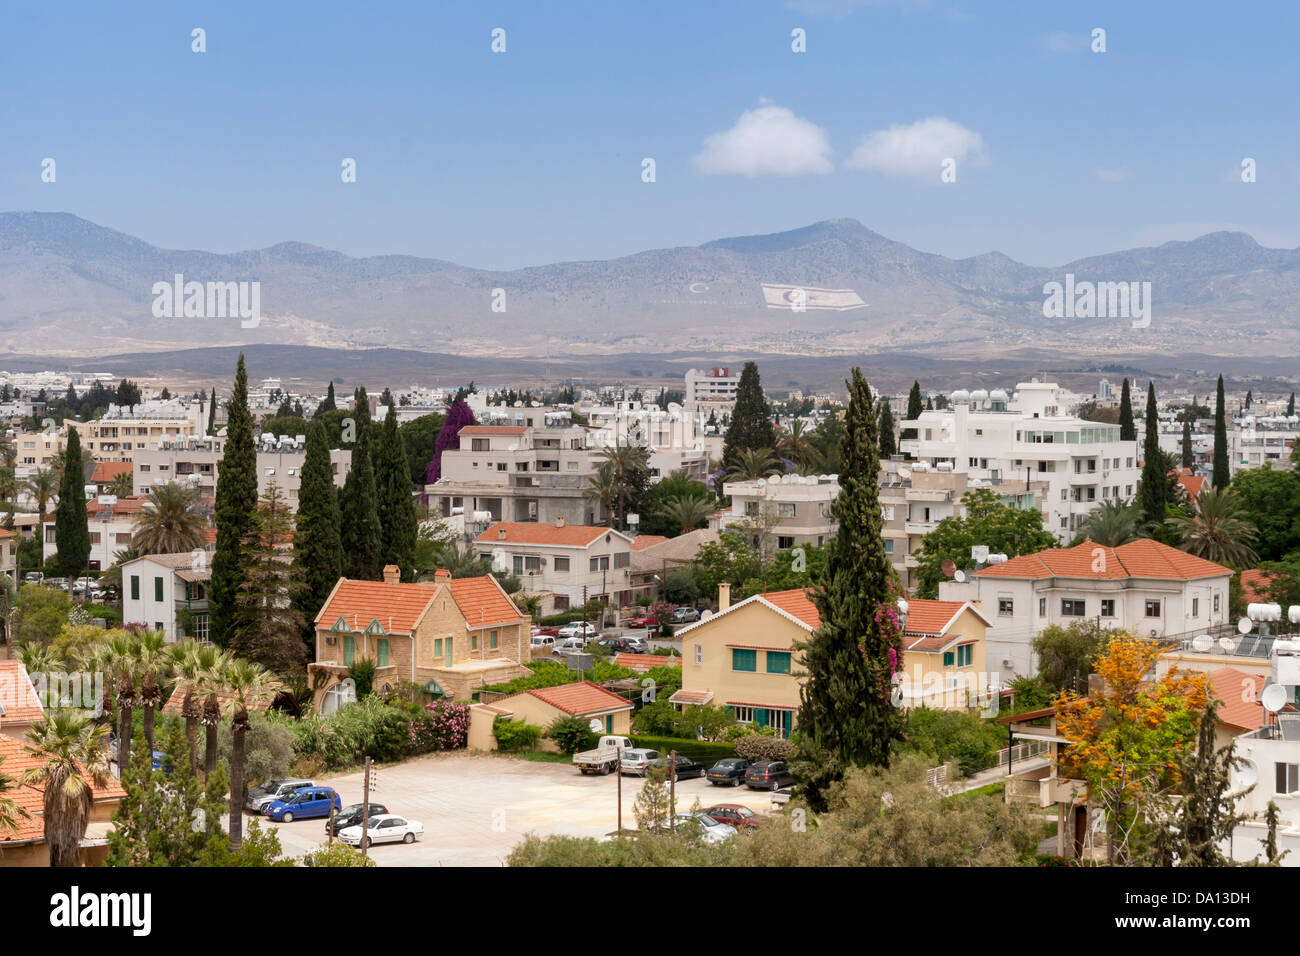 Vista da Ledra Palace Hotel. Il bagno turco a nord con le montagne Kyrenian. Nazioni Unite zona di buffer, Nicosia Cipro. Foto Stock